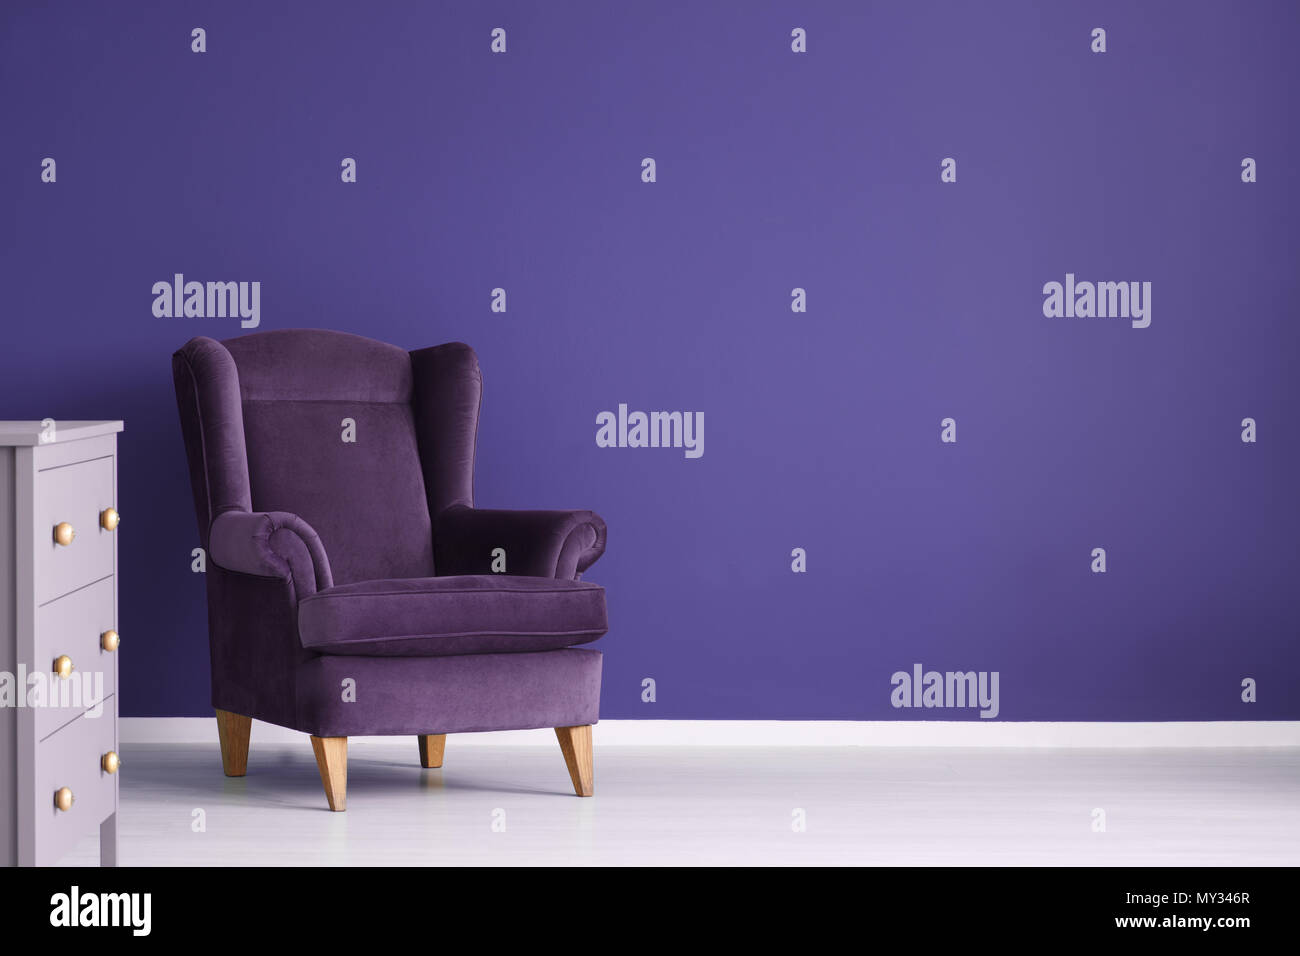 Fauteuil en velours pourpre violet contre mur dans un salon intérieur avec cabinet et copy space Banque D'Images